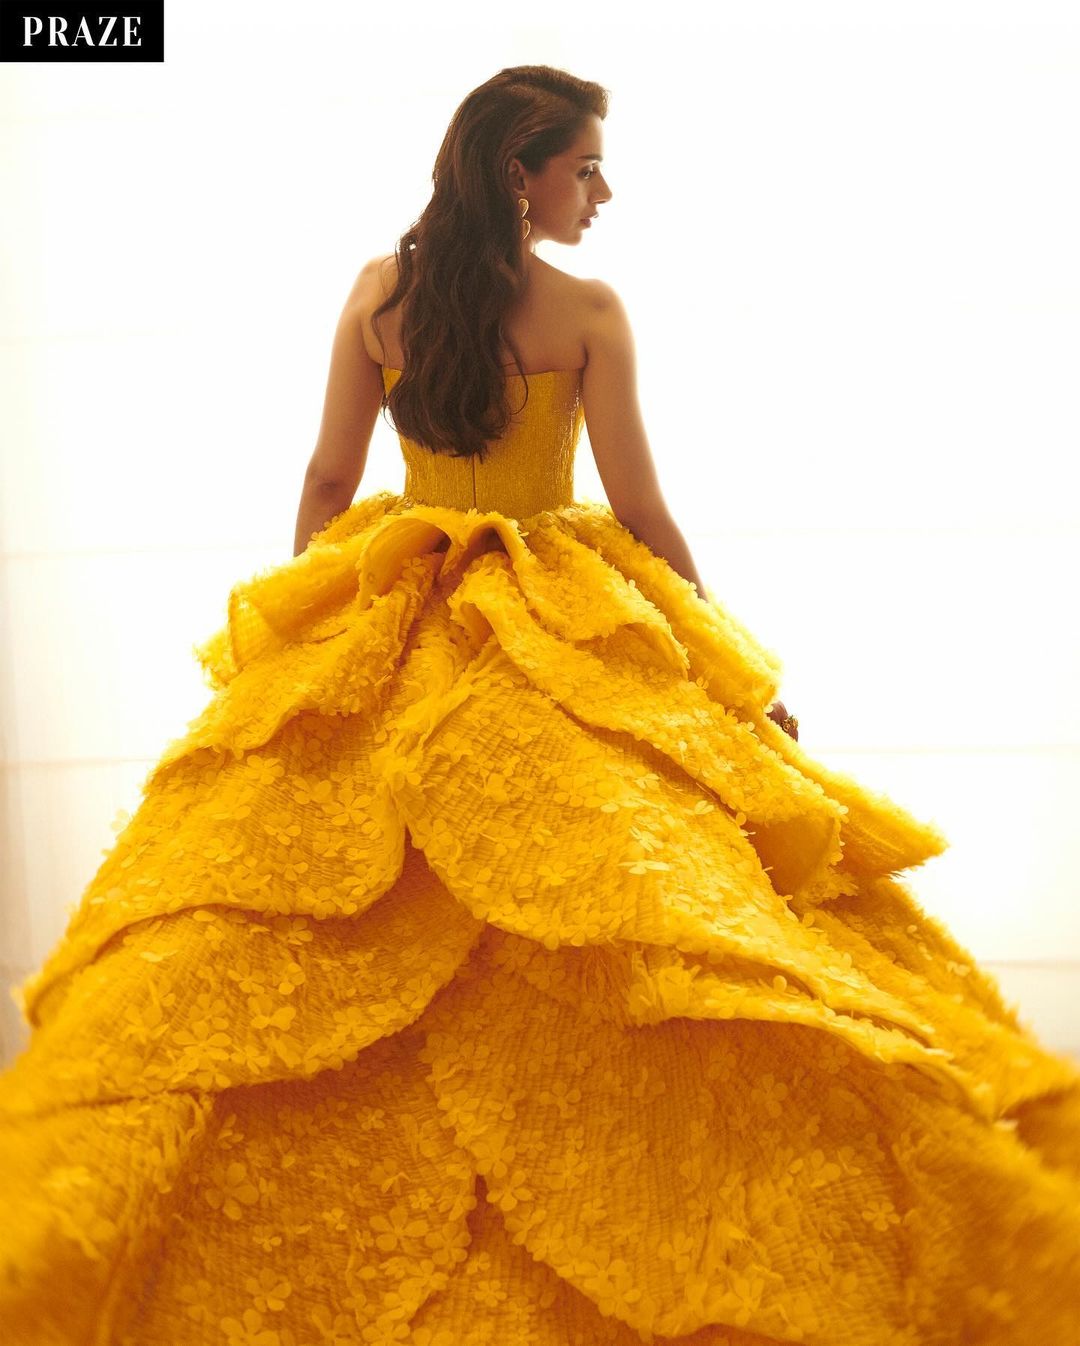 South Indian Actress Aditi Rao Hydari In Yellow Gown